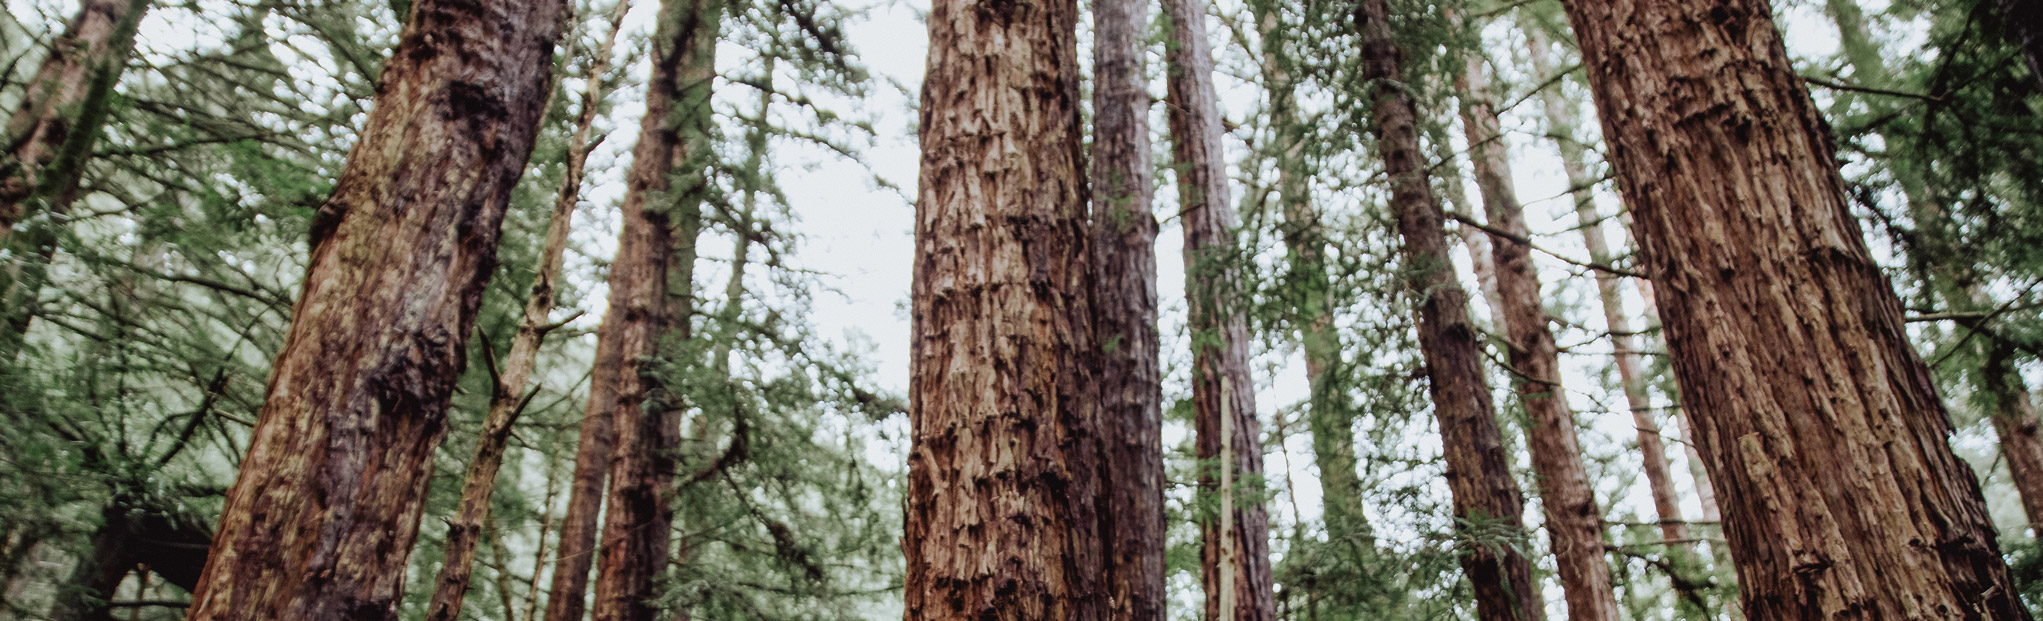 sequoia di sanfrancisco